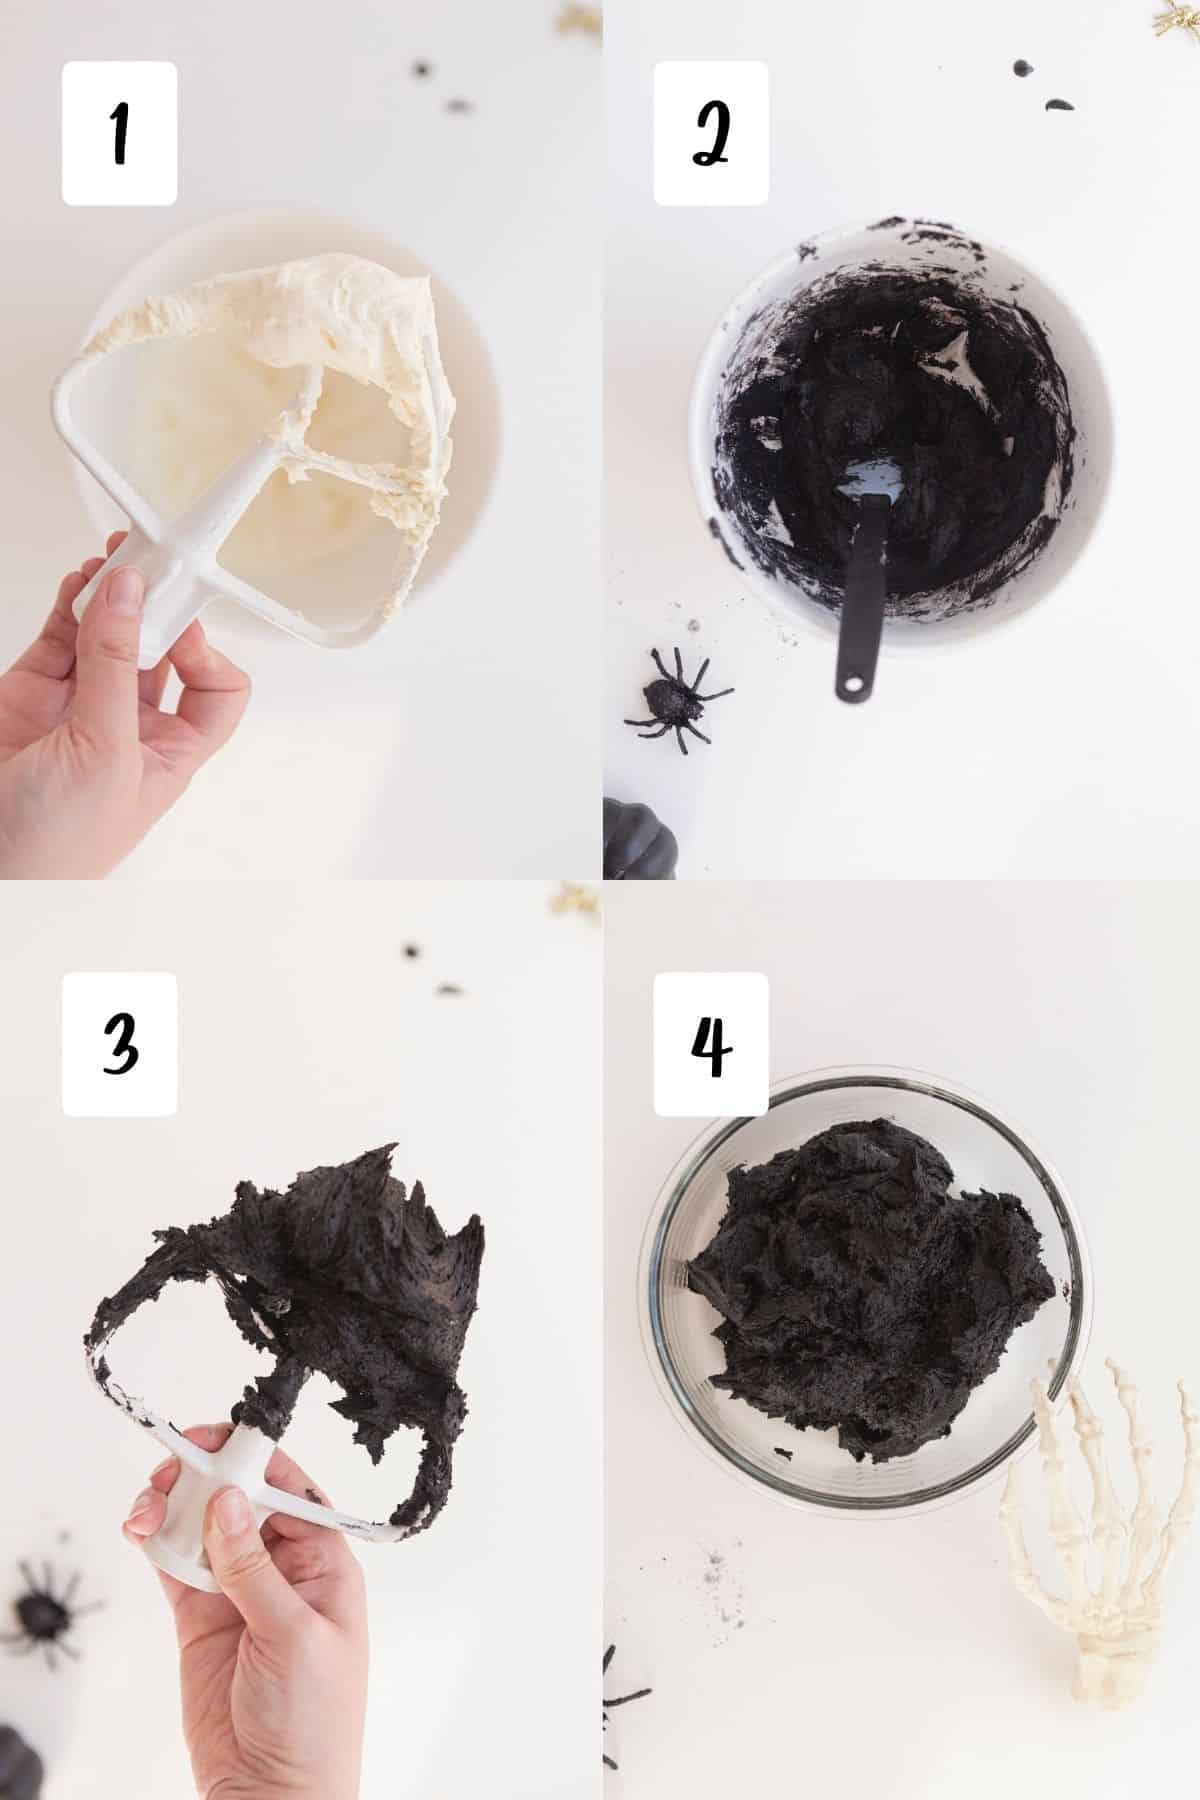 process for making black velvet frosting in 4 steps